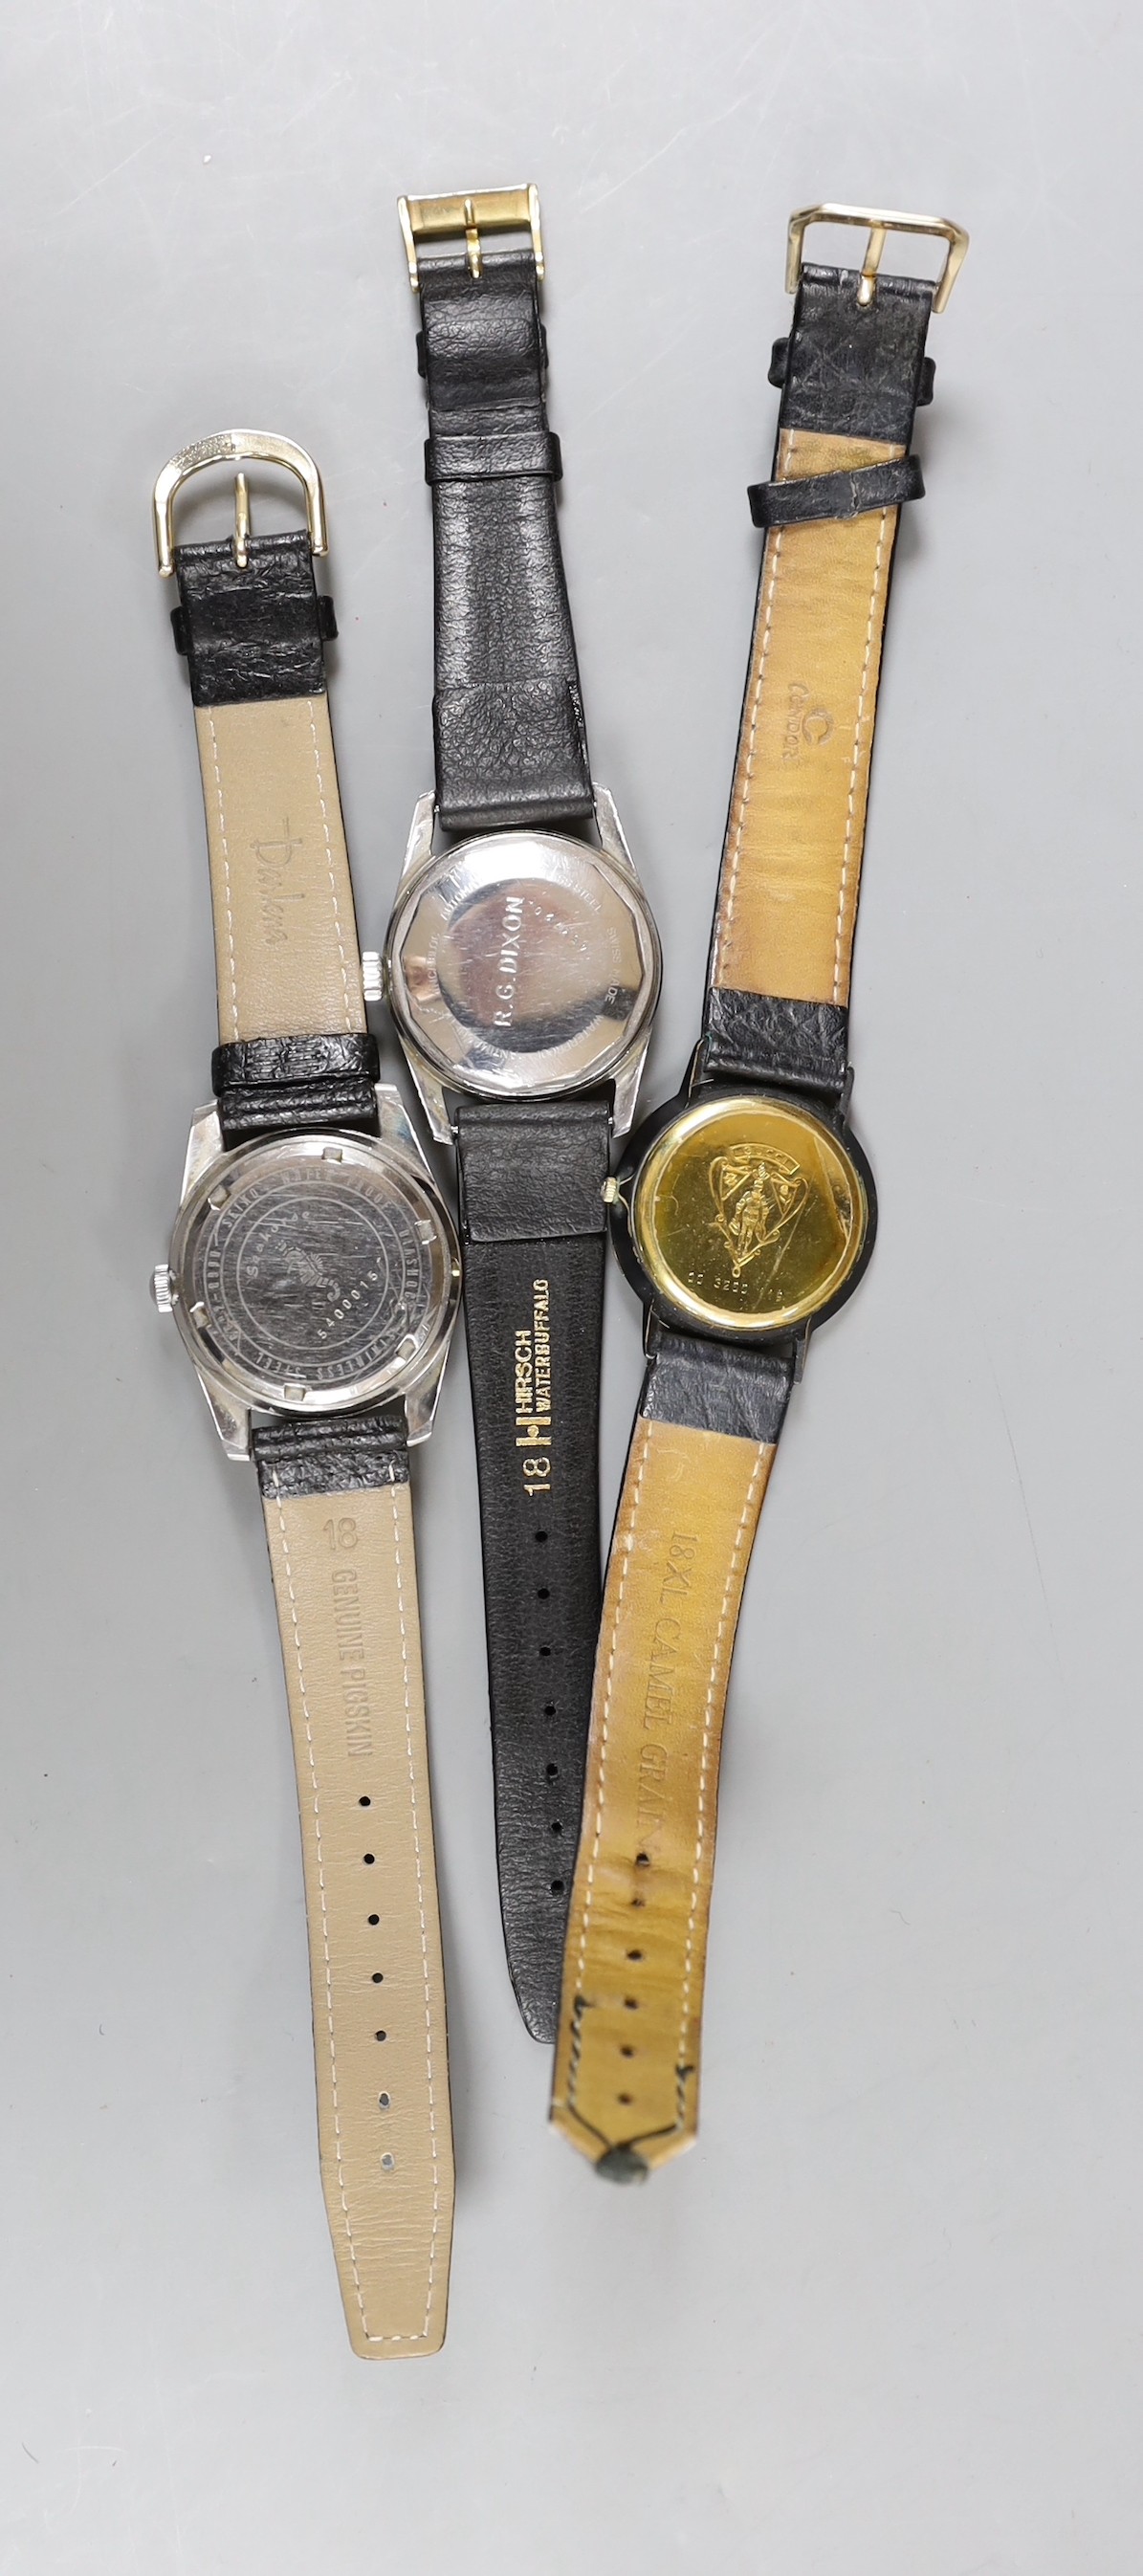 A gentleman's steel Le Chamois wrist watch, a gentleman's gold plated Gucci wrist watch and a gentleman's steel Seahorse wrist watch.